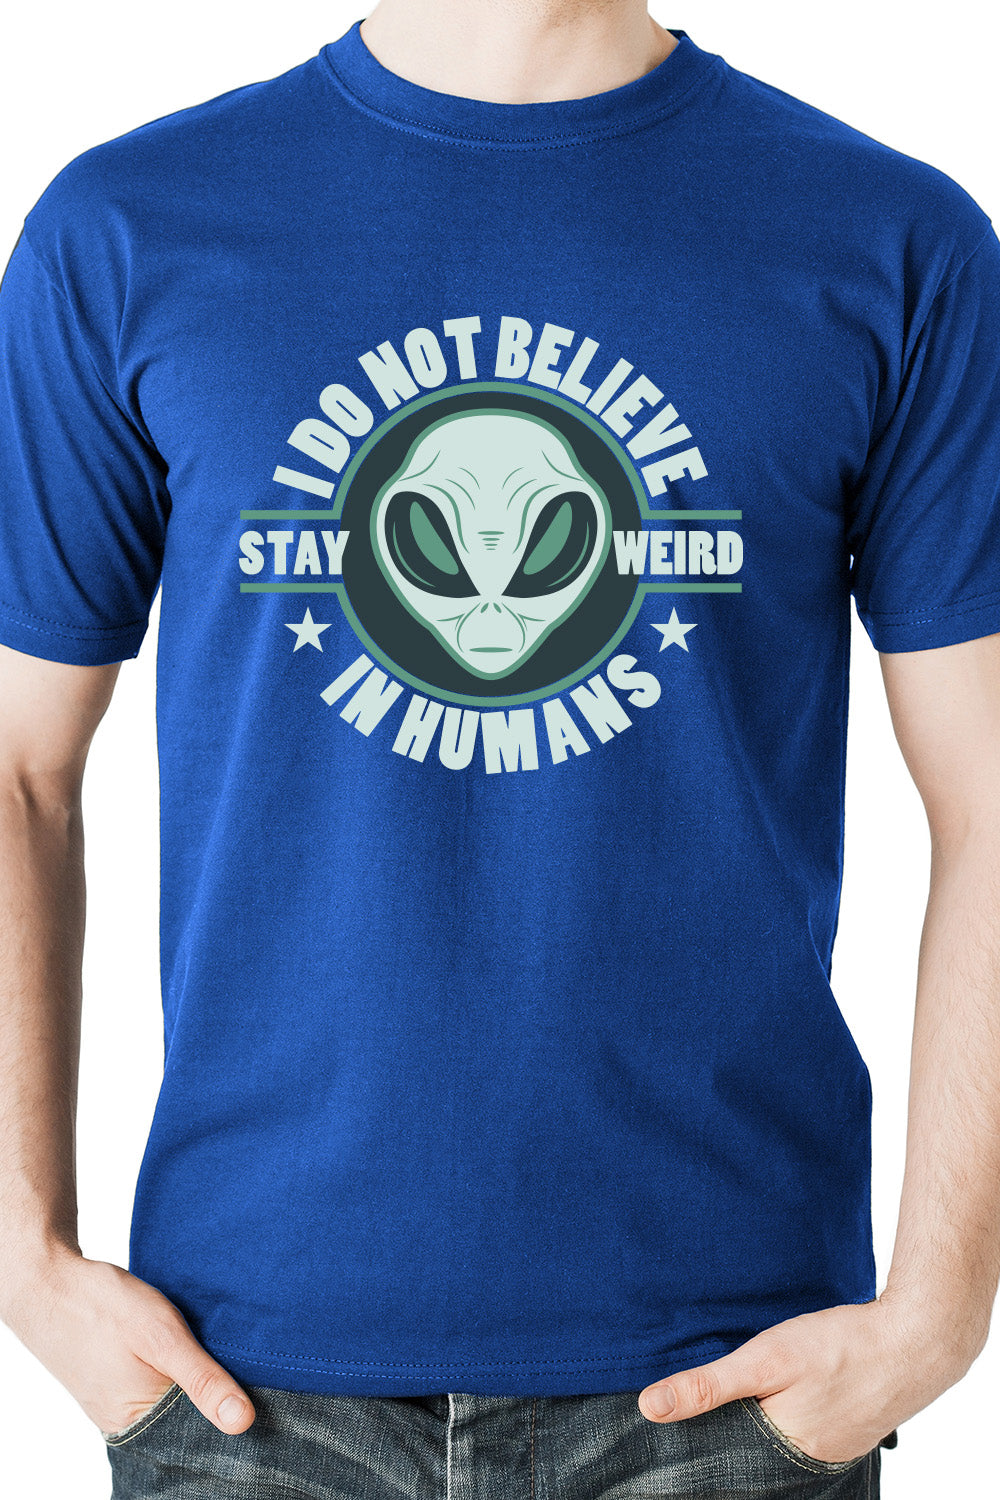 Stay Weird - Alien Do not believe in Humans blue casual t-shirt